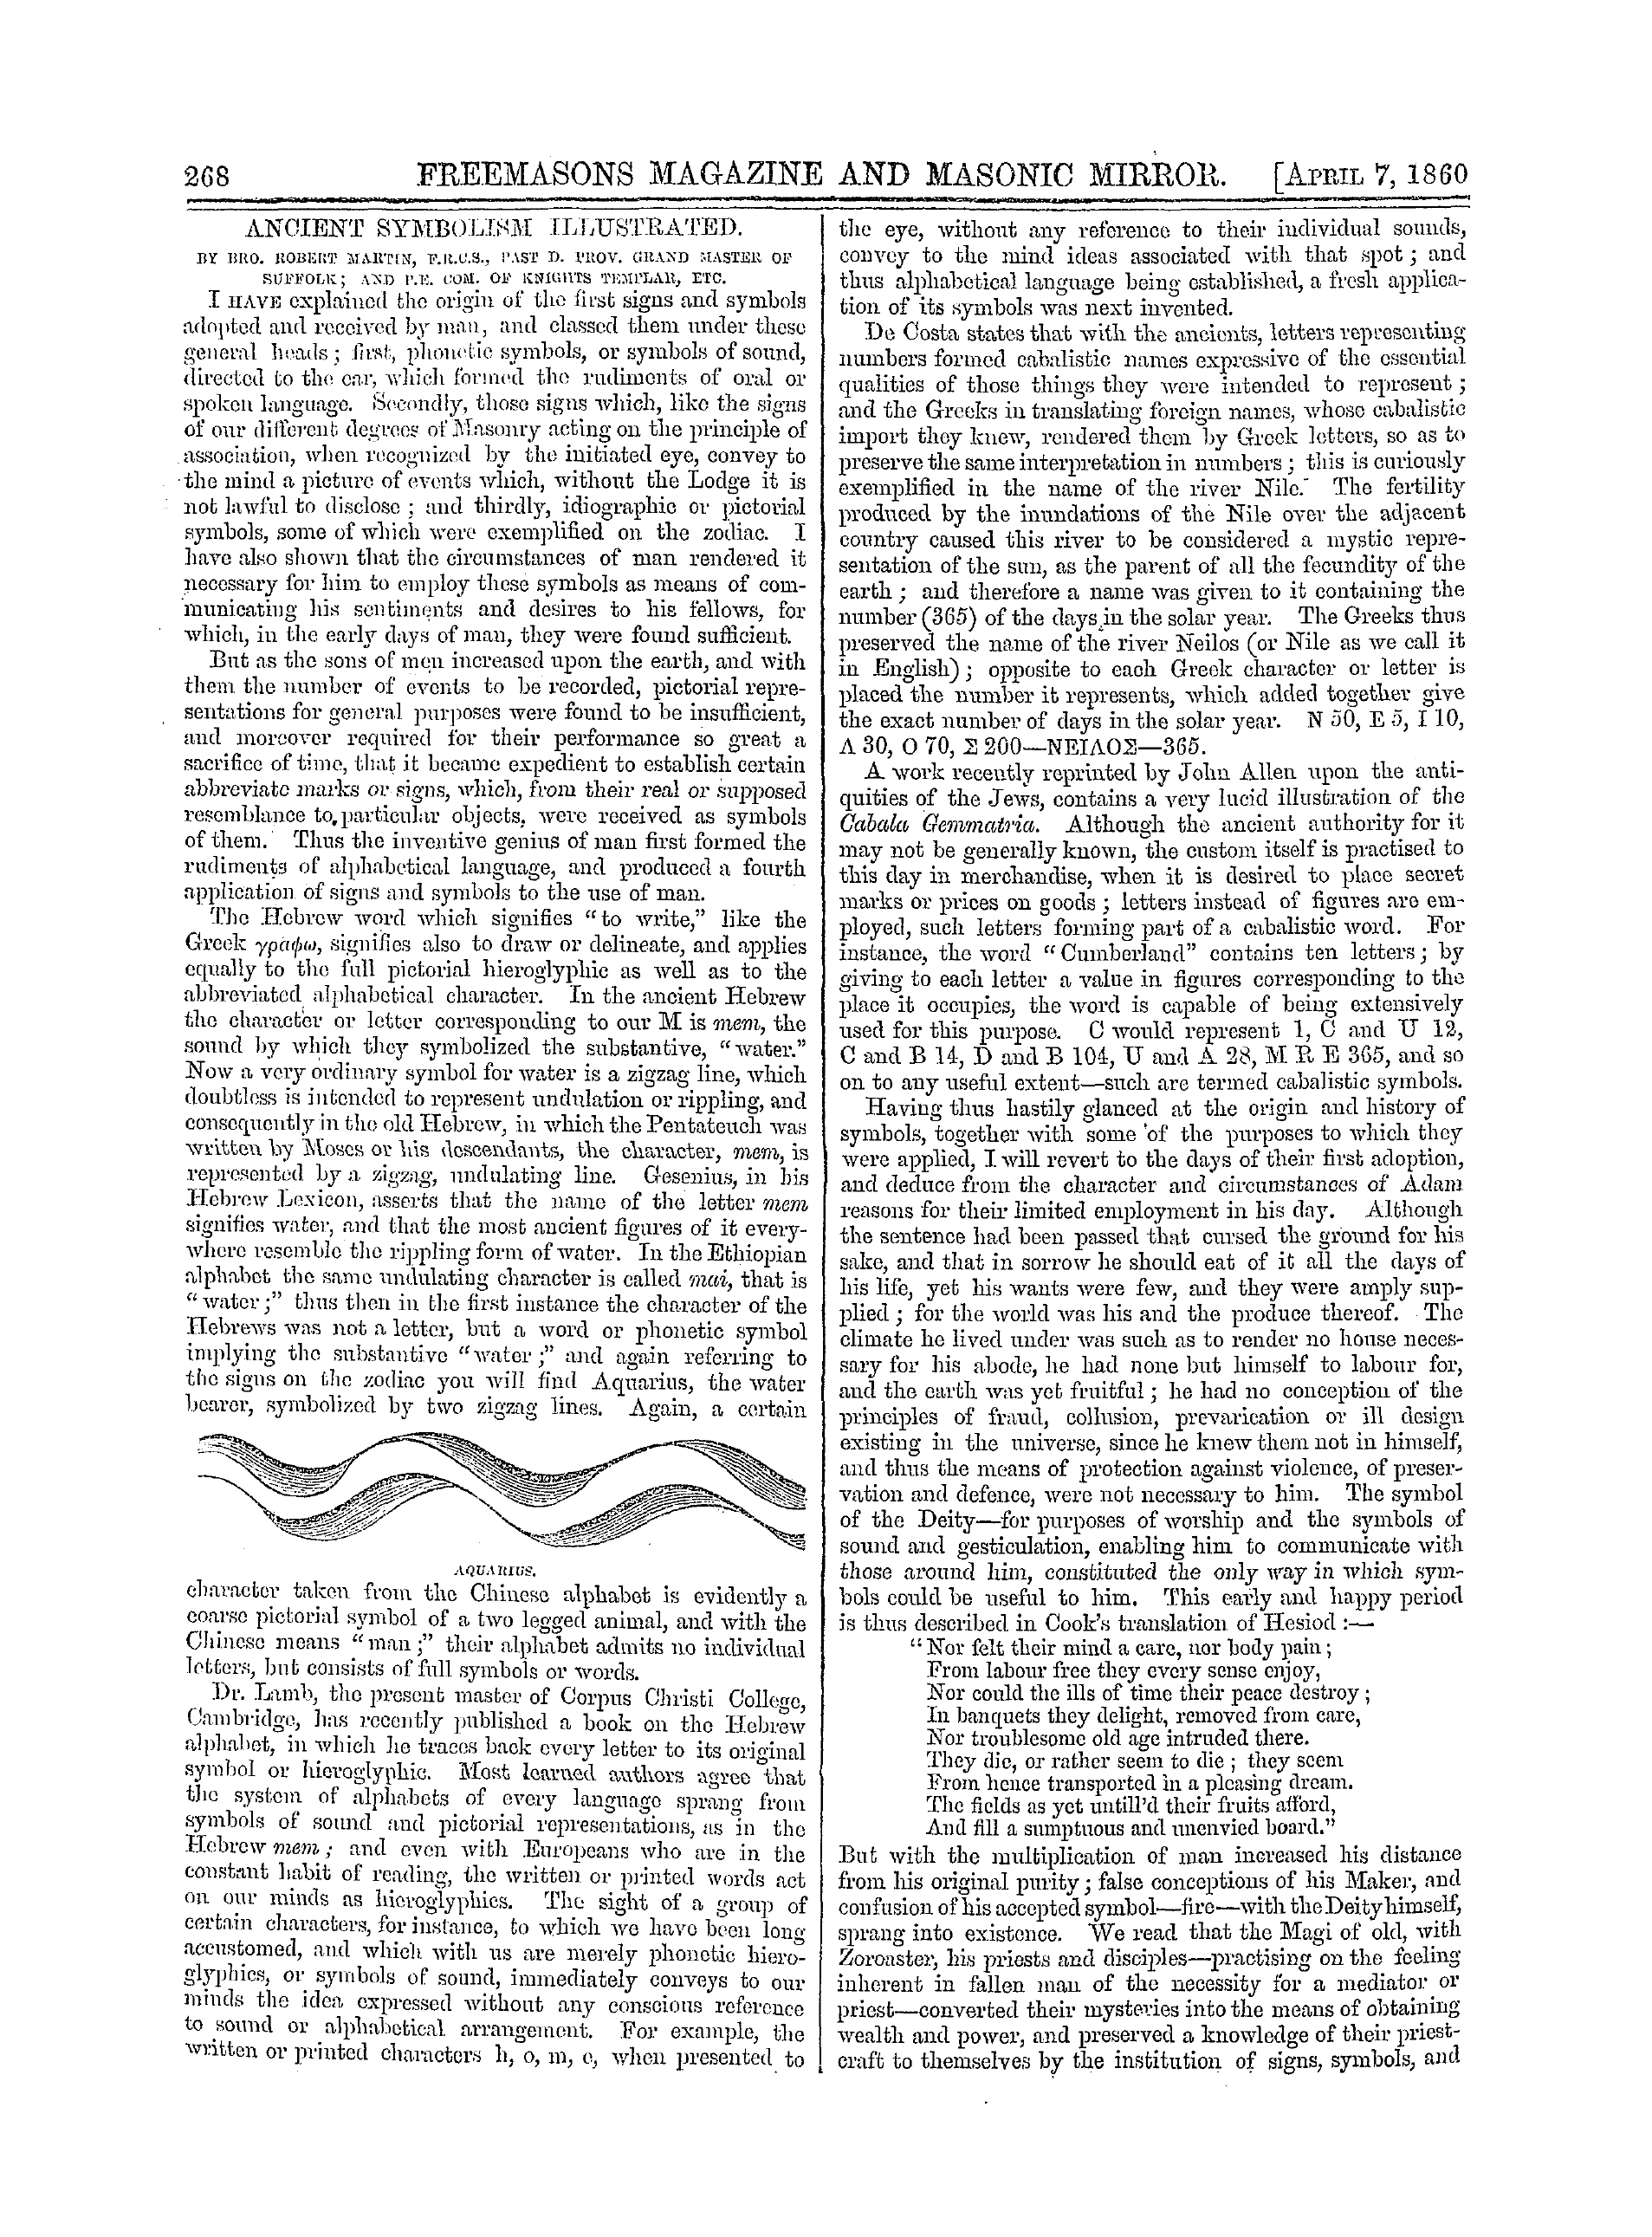 The Freemasons' Monthly Magazine: 1860-04-07: 8